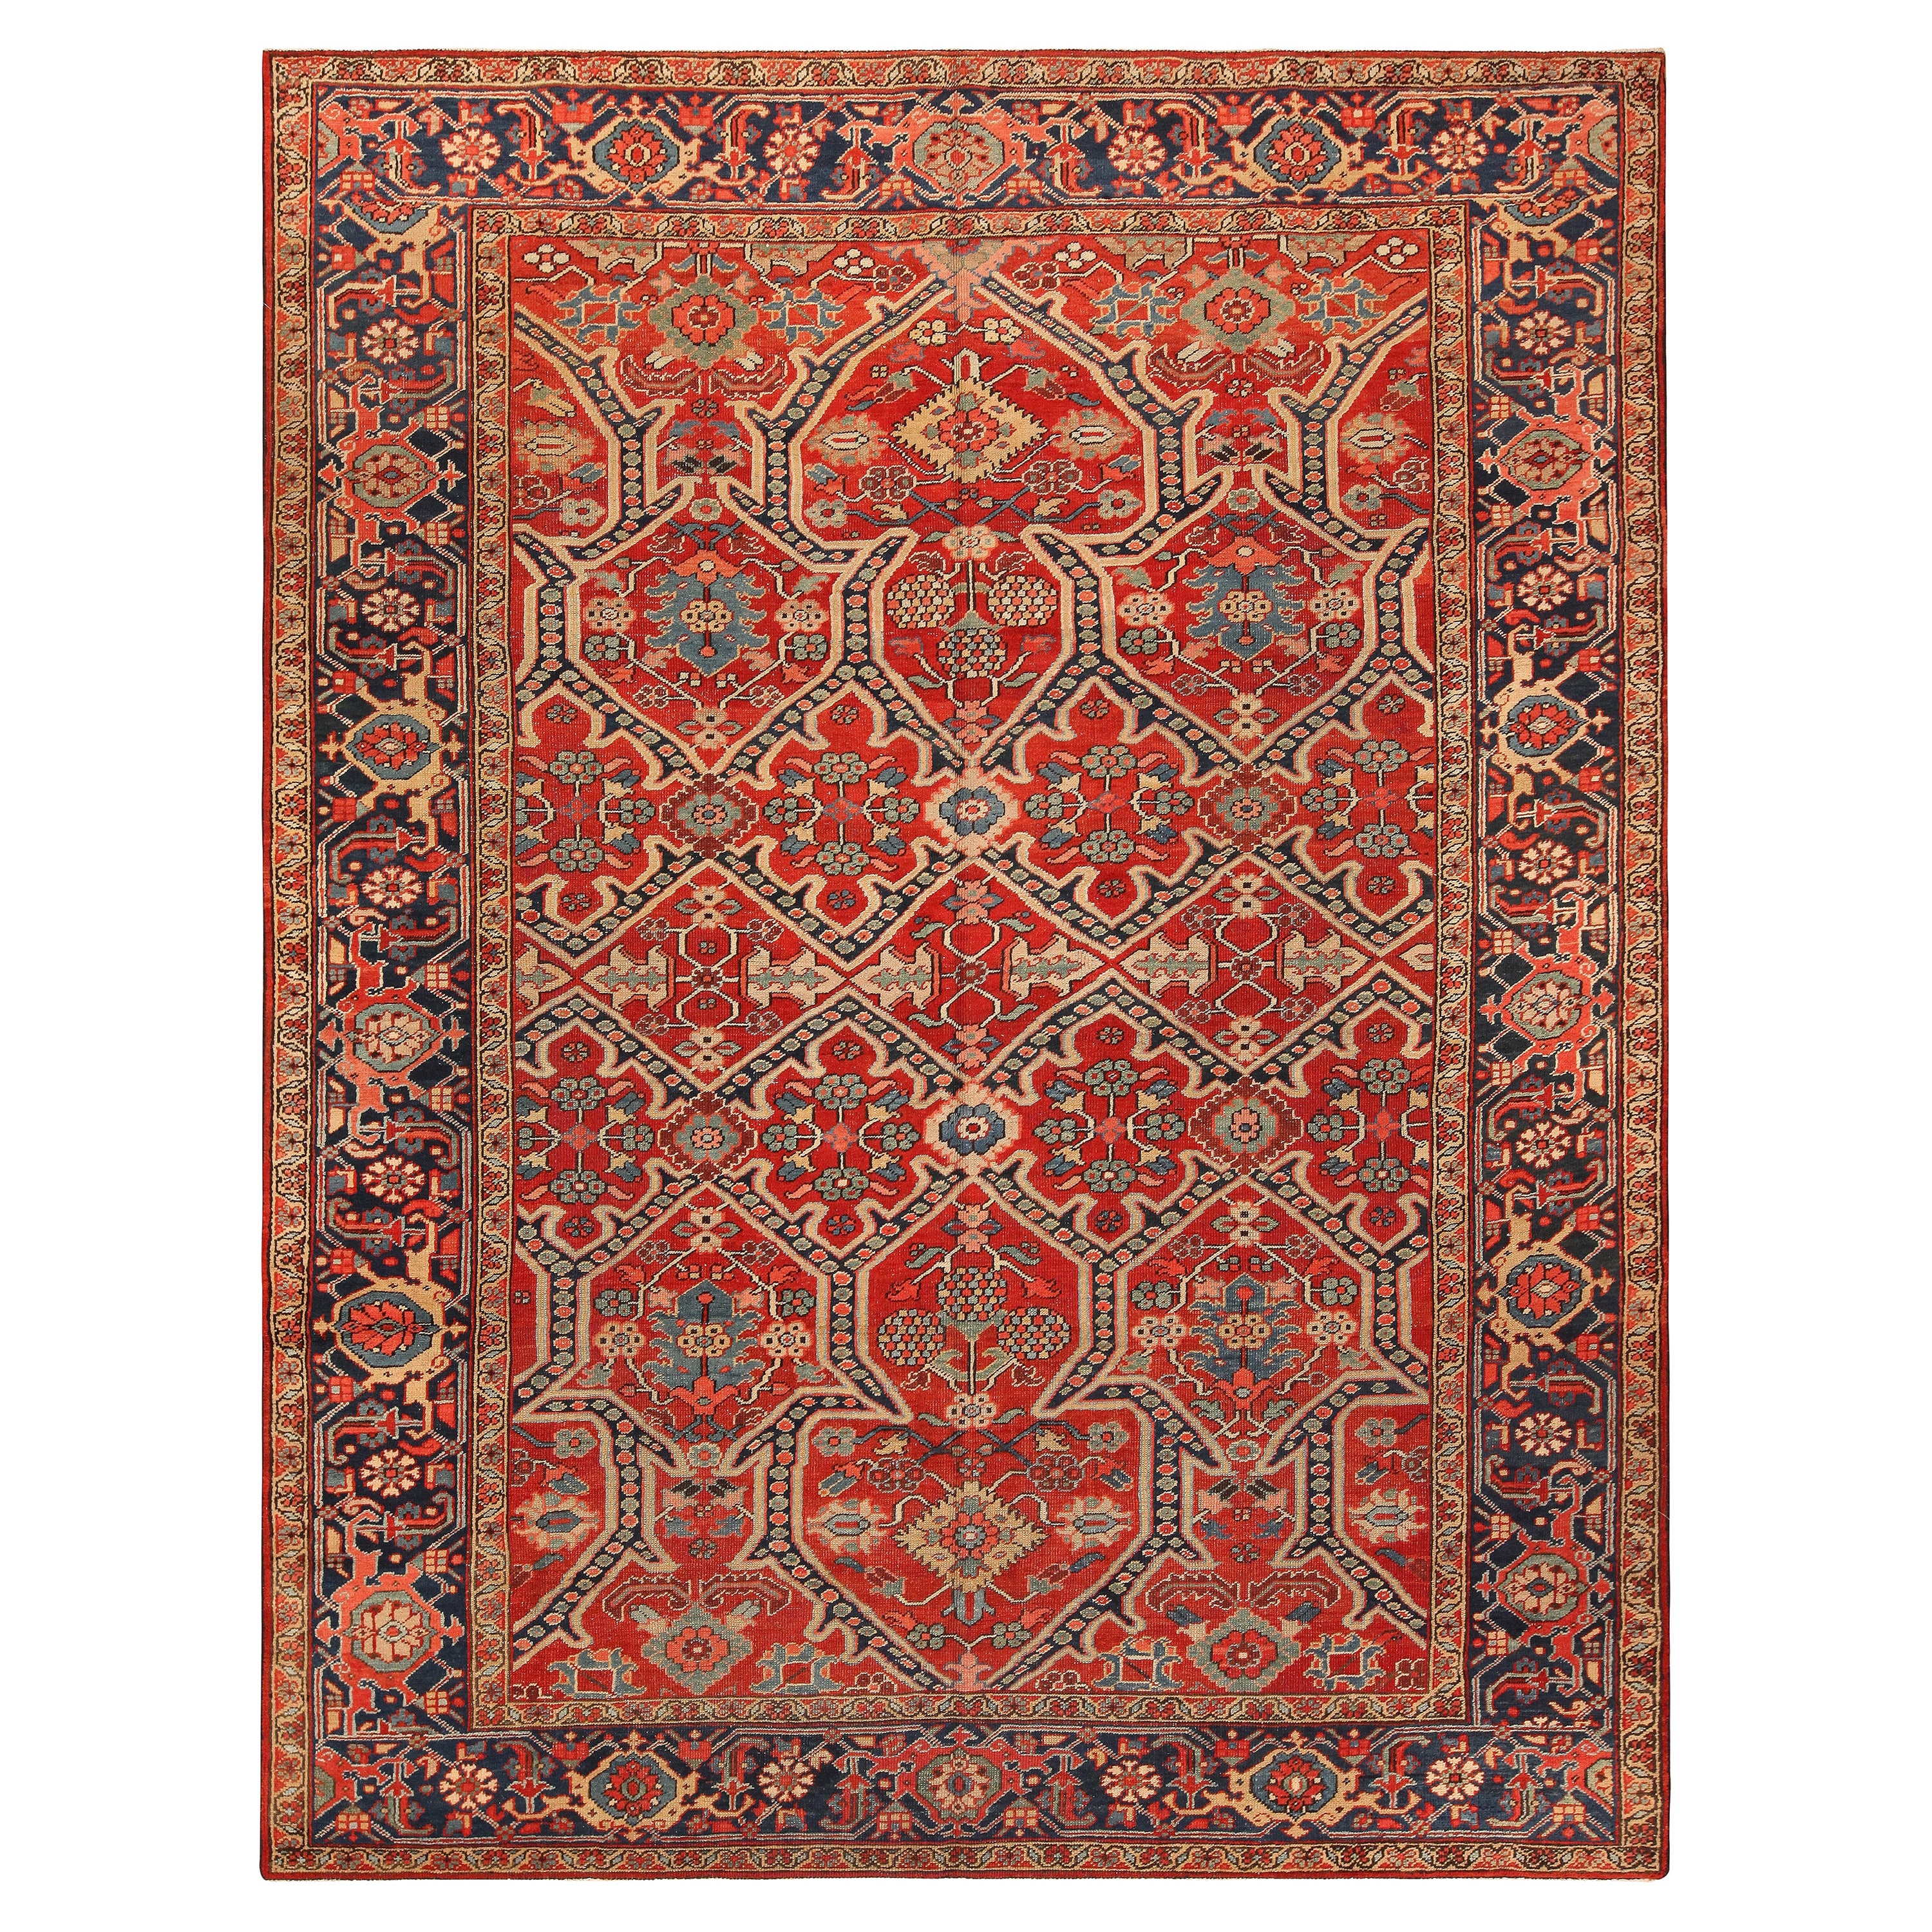 Époustouflant tapis persan ancien Heriz géométrique 9'2" x 11'8"